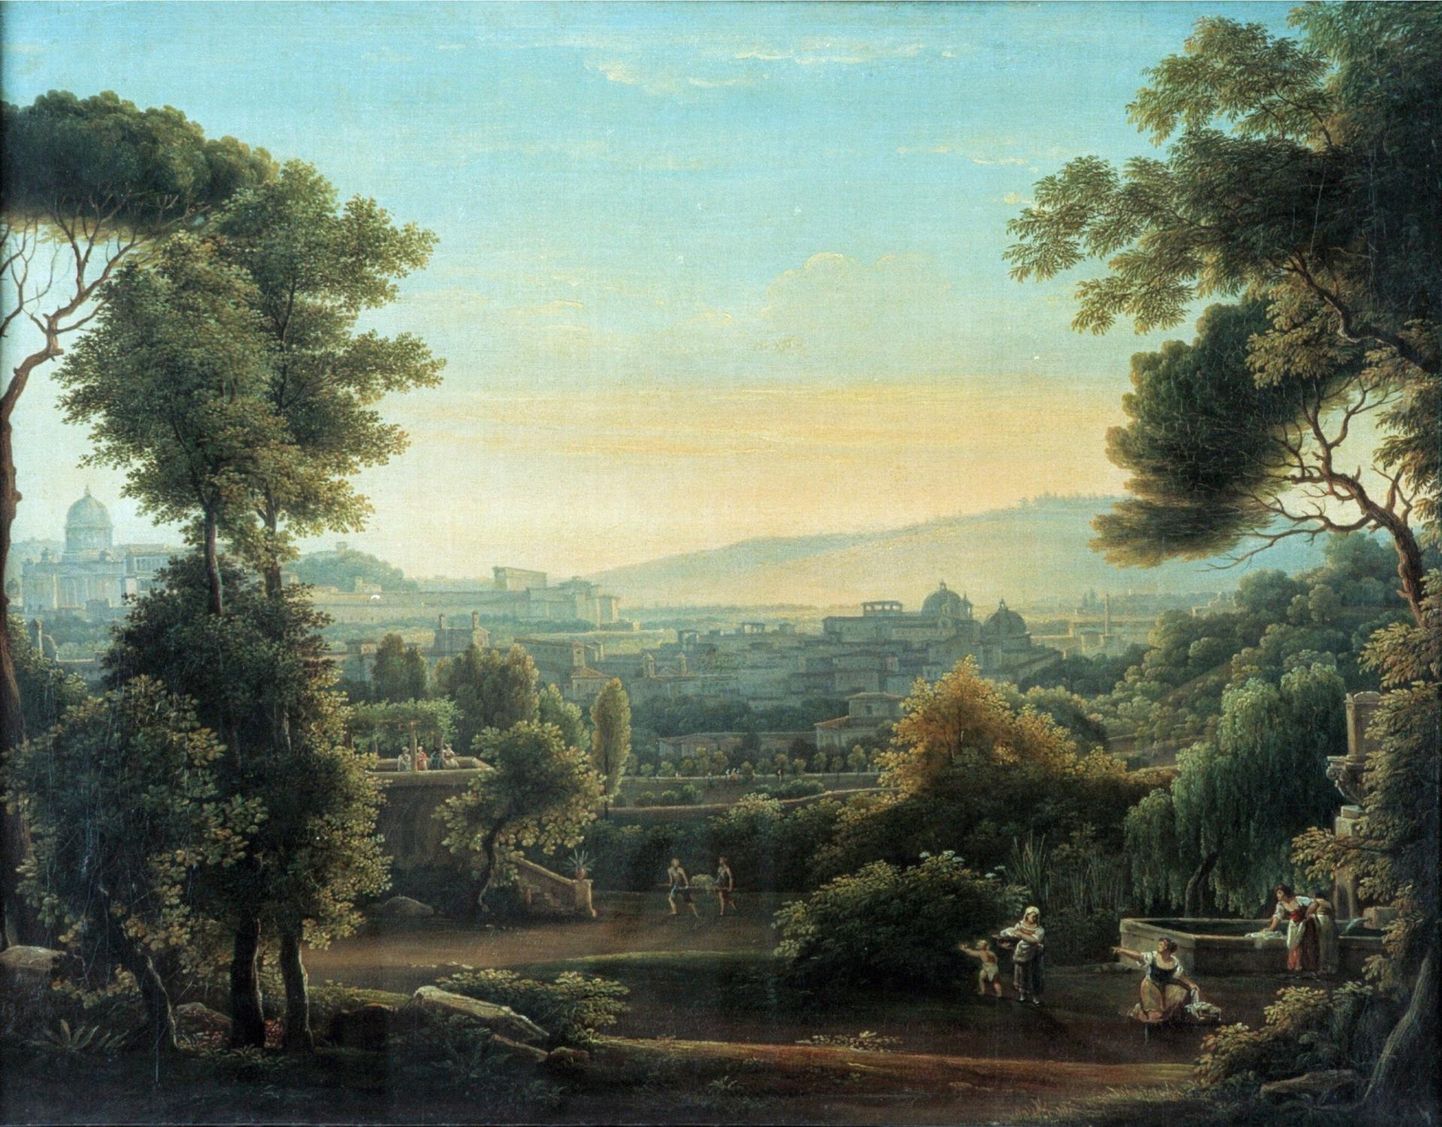 Wilhelm von Blanckenhagen võis oma reisil näha Roomat ka sellisena, nagu on seda maalinud Fjodor Matvejev (1758–1826) aastal 1810. Maal asub Voroneži oblastis Ivan Kramskoi nimelises kunstimuuseumis.